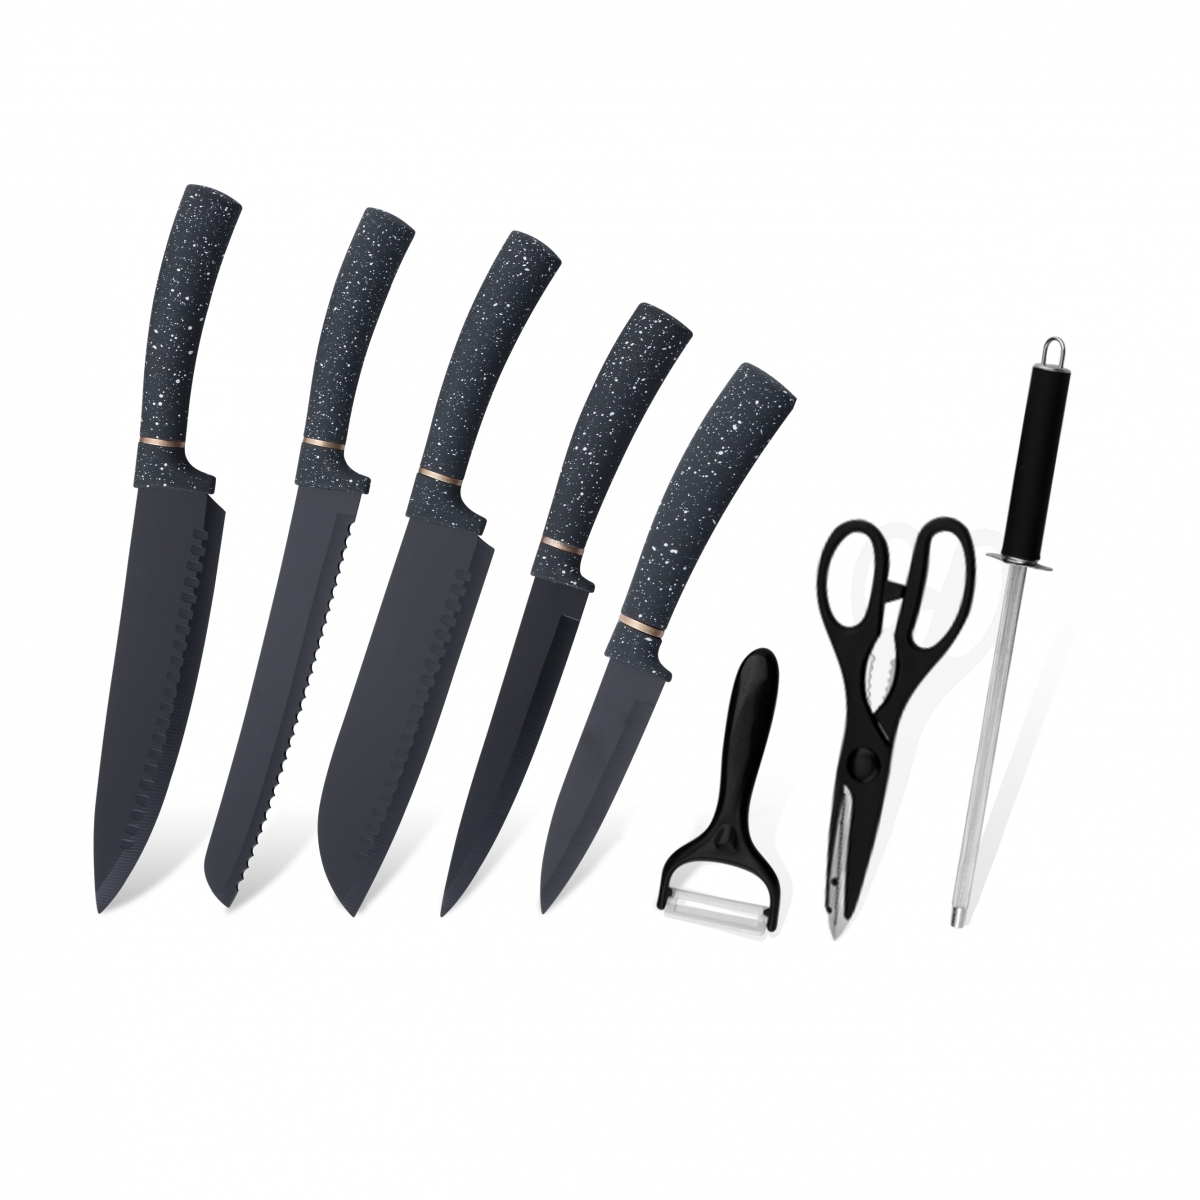 K125-Høj kvalitet rustfrit stål kokkekniv Køkkenkniv sæt-ZX | køkkenkniv, køkkenværktøj, silikone kageform, skærebræt, bageværktøjssæt, kokkekniv, bøfkniv, udskærerkniv, værktøjskniv, skærekniv, knivblok, knivstativ, Santoku kniv, småbørnskniv, plastikkniv, non-stick maling Kniv, farverig kniv, rustfri stålkniv, dåseåbner, oplukker, te-si, rivejern, æggepisker, nylon køkkenværktøj, silikone køkkenværktøj, cookie cutter, madlavningsknivsæt, knivsliber, skræller, kagekniv, ostekniv, pizza Kniv, silikonespatel, silikoneske, madtang, smedet kniv, køkkensakse, kagebageknive, kogeknive til børn, udskæringskniv